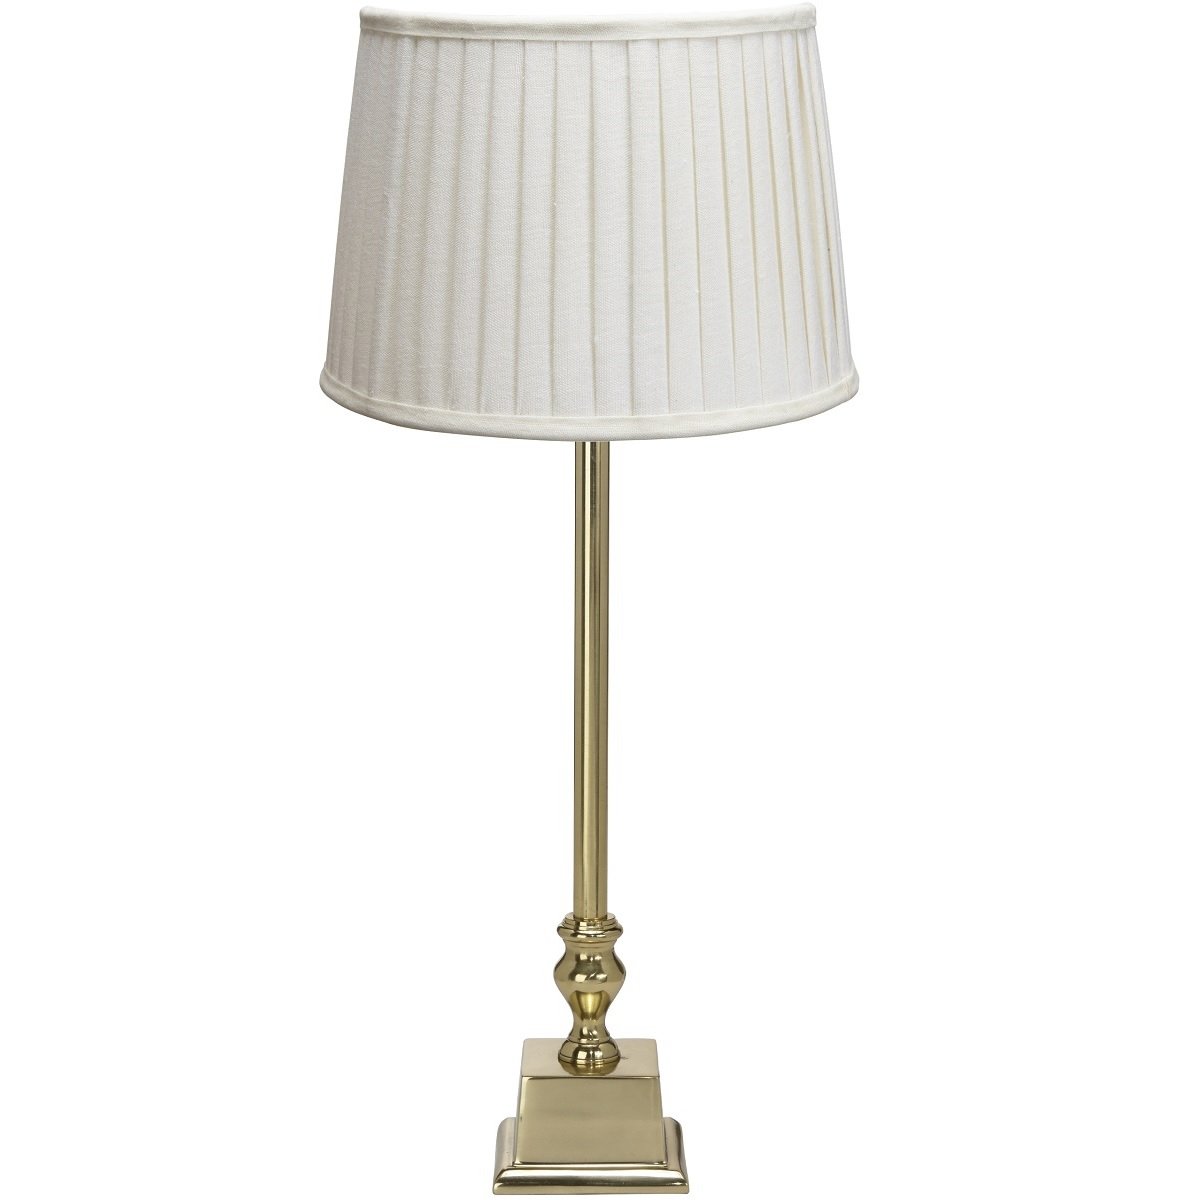 PR Home 1163602202301 Tischleuchte --> Gold 51cm im Lampenschirm kaufen online Leuchten Shop Linné & Lampen cremeweiß